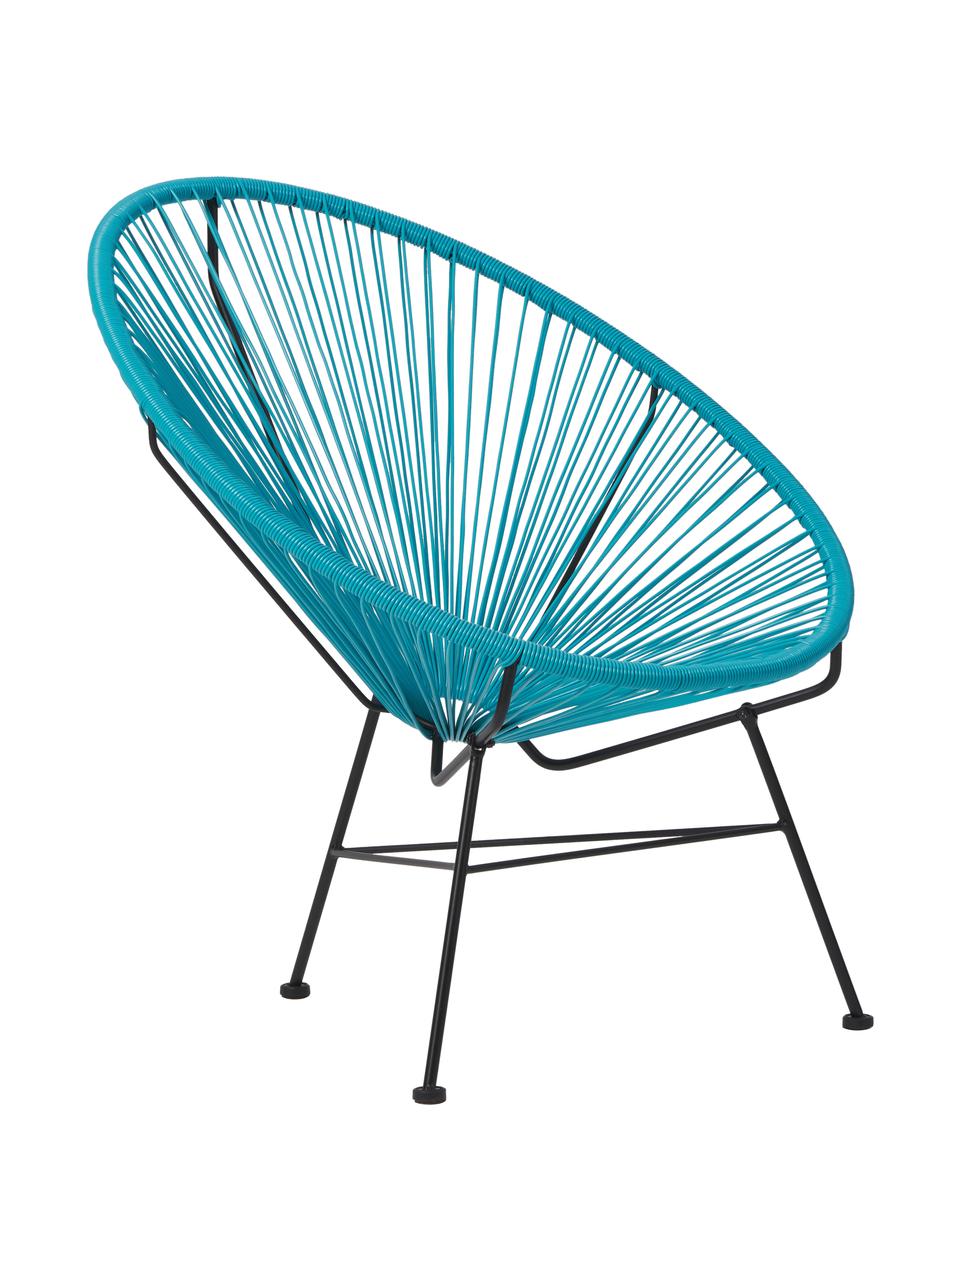 Fotel wypoczynkowy ze splotu z tworzywa sztucznego Bahia, Stelaż: metal malowany proszkowo, Niebieski, S 81 x G 73 cm